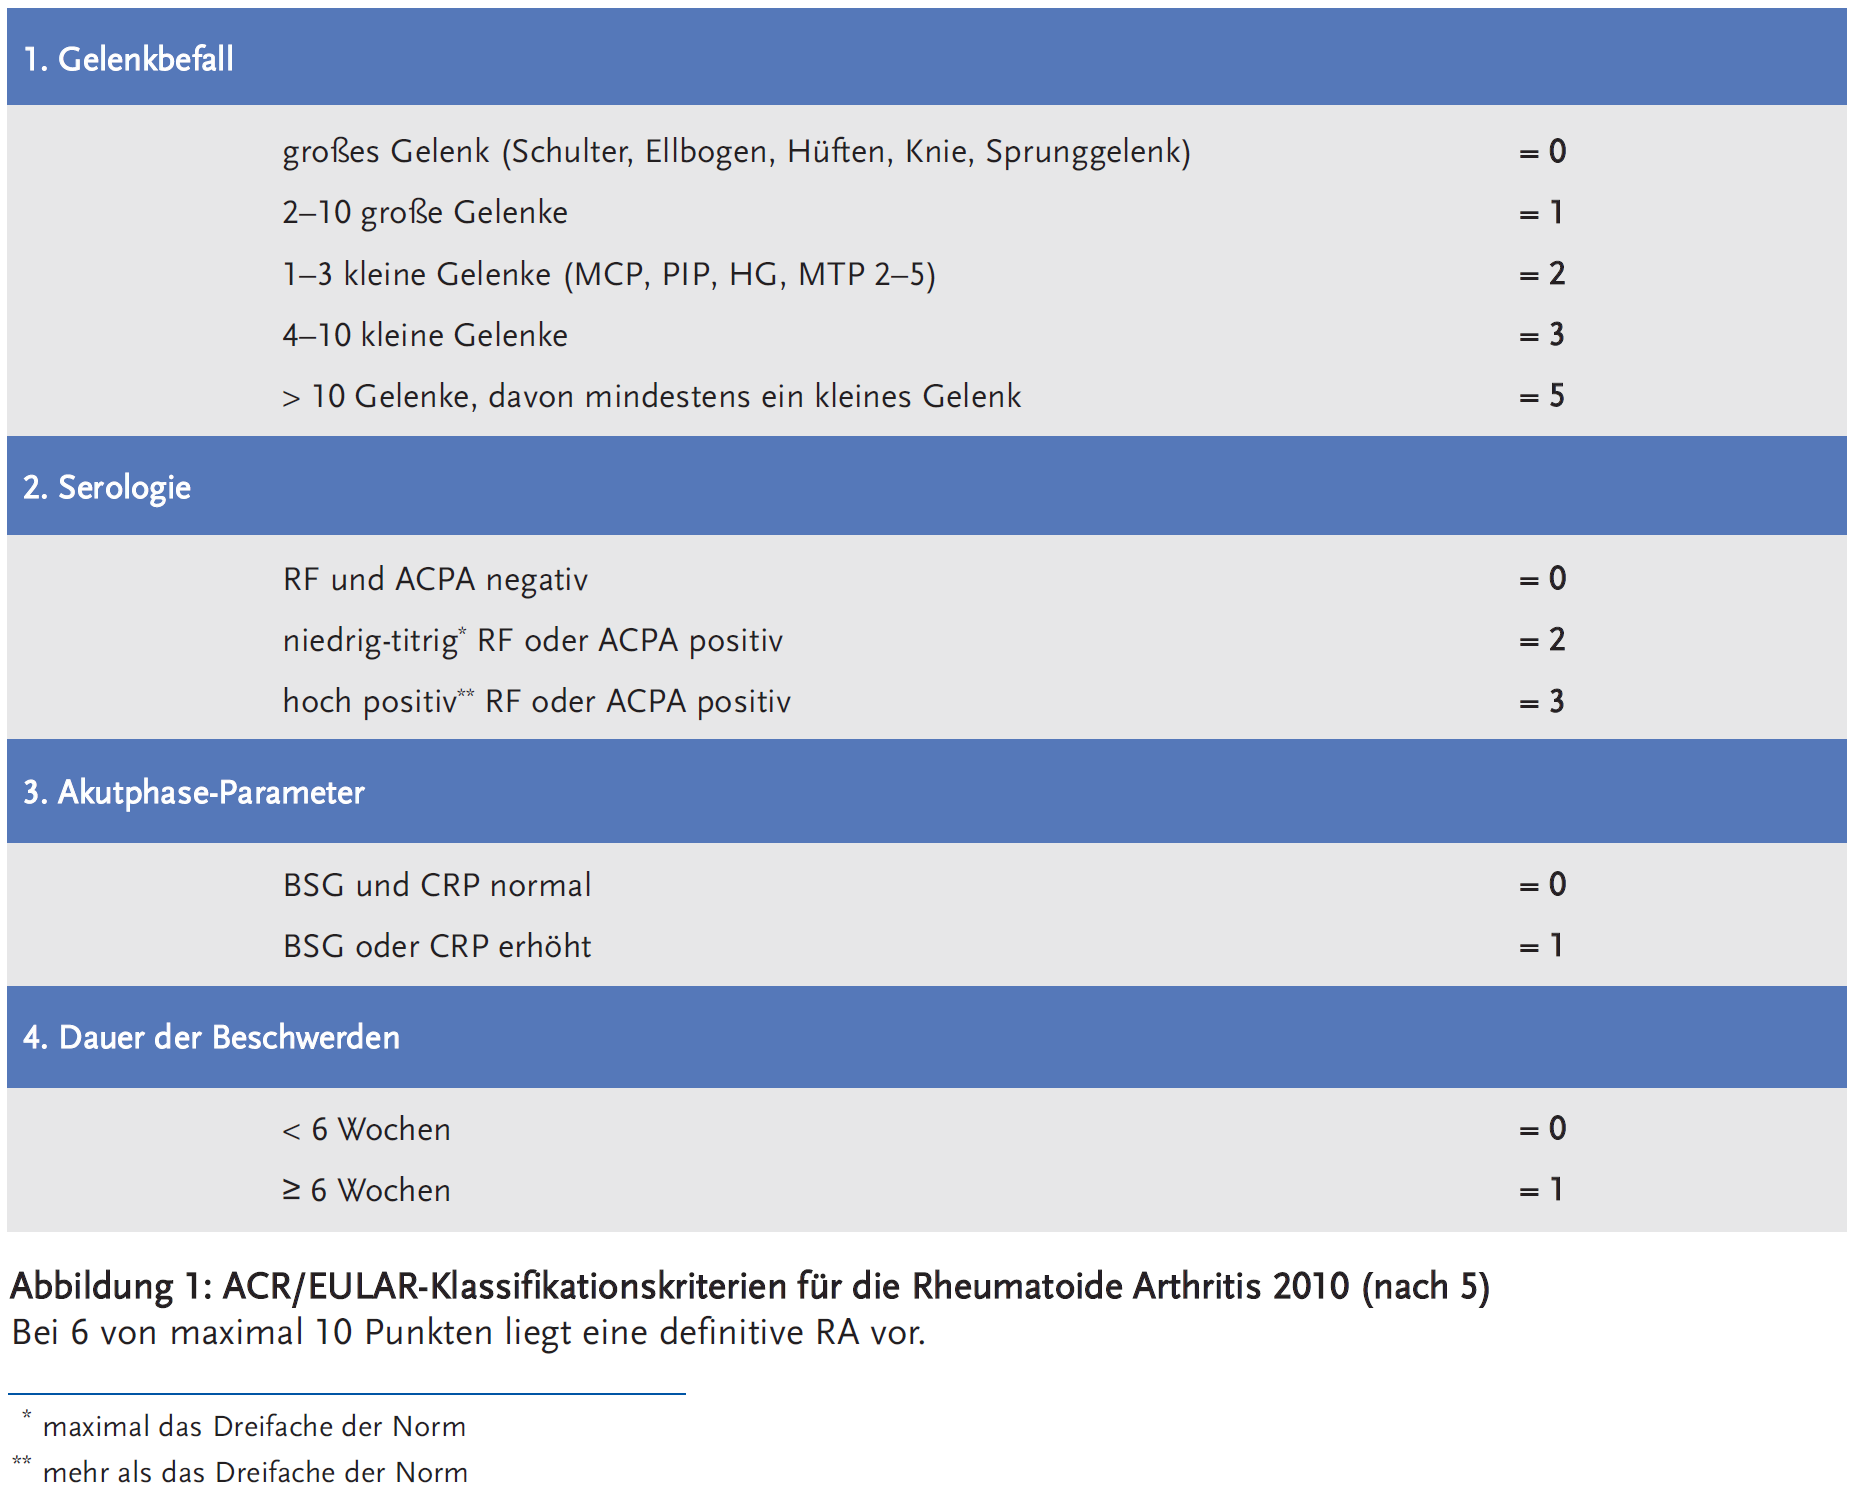 Abbildung 1: ACR/EULAR-Klassifikationskriterien für die Rheumatoide Arthritis 2010 (nach 5)